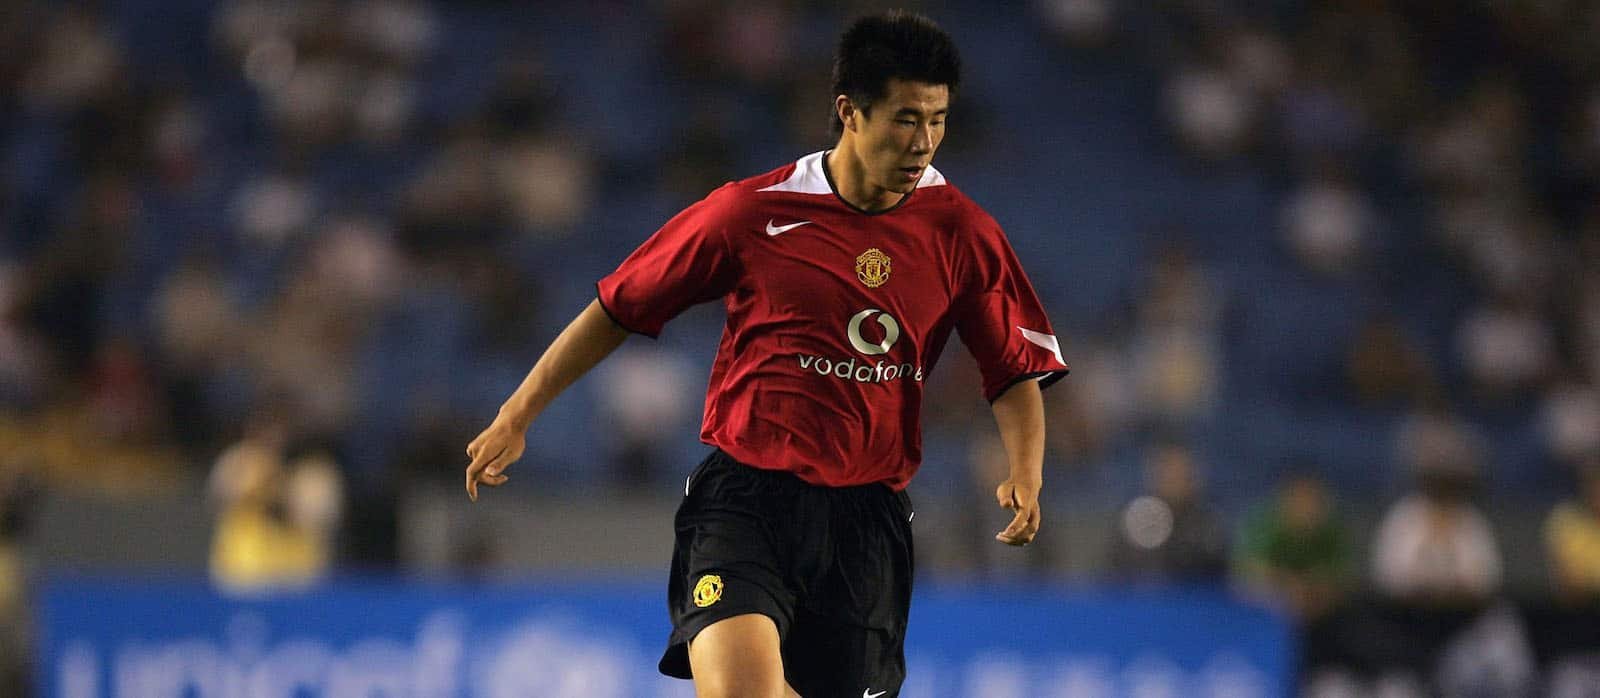 El primer i únic jugador xinès del Manchester United recorda la seva etapa al club - Man United News And Transfer News